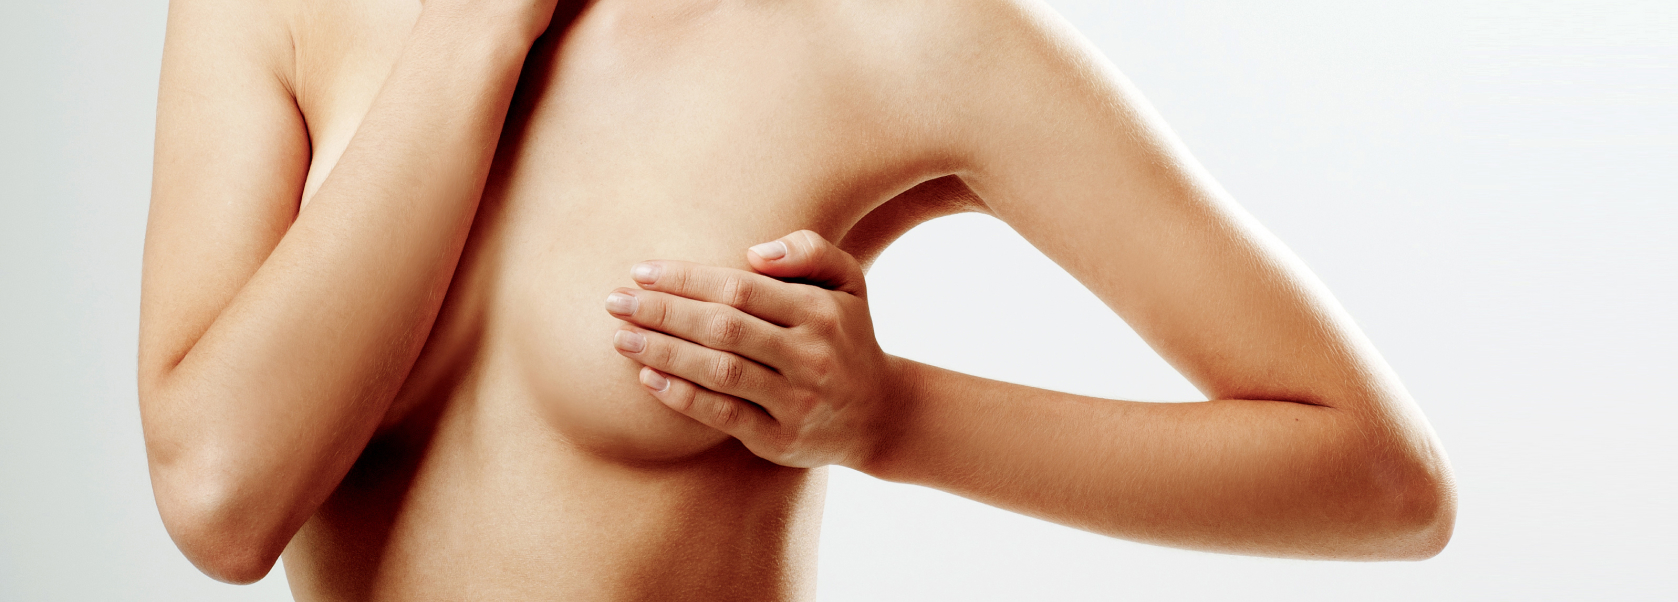 Brustverkleinerung - Gründe für eine Behandlung